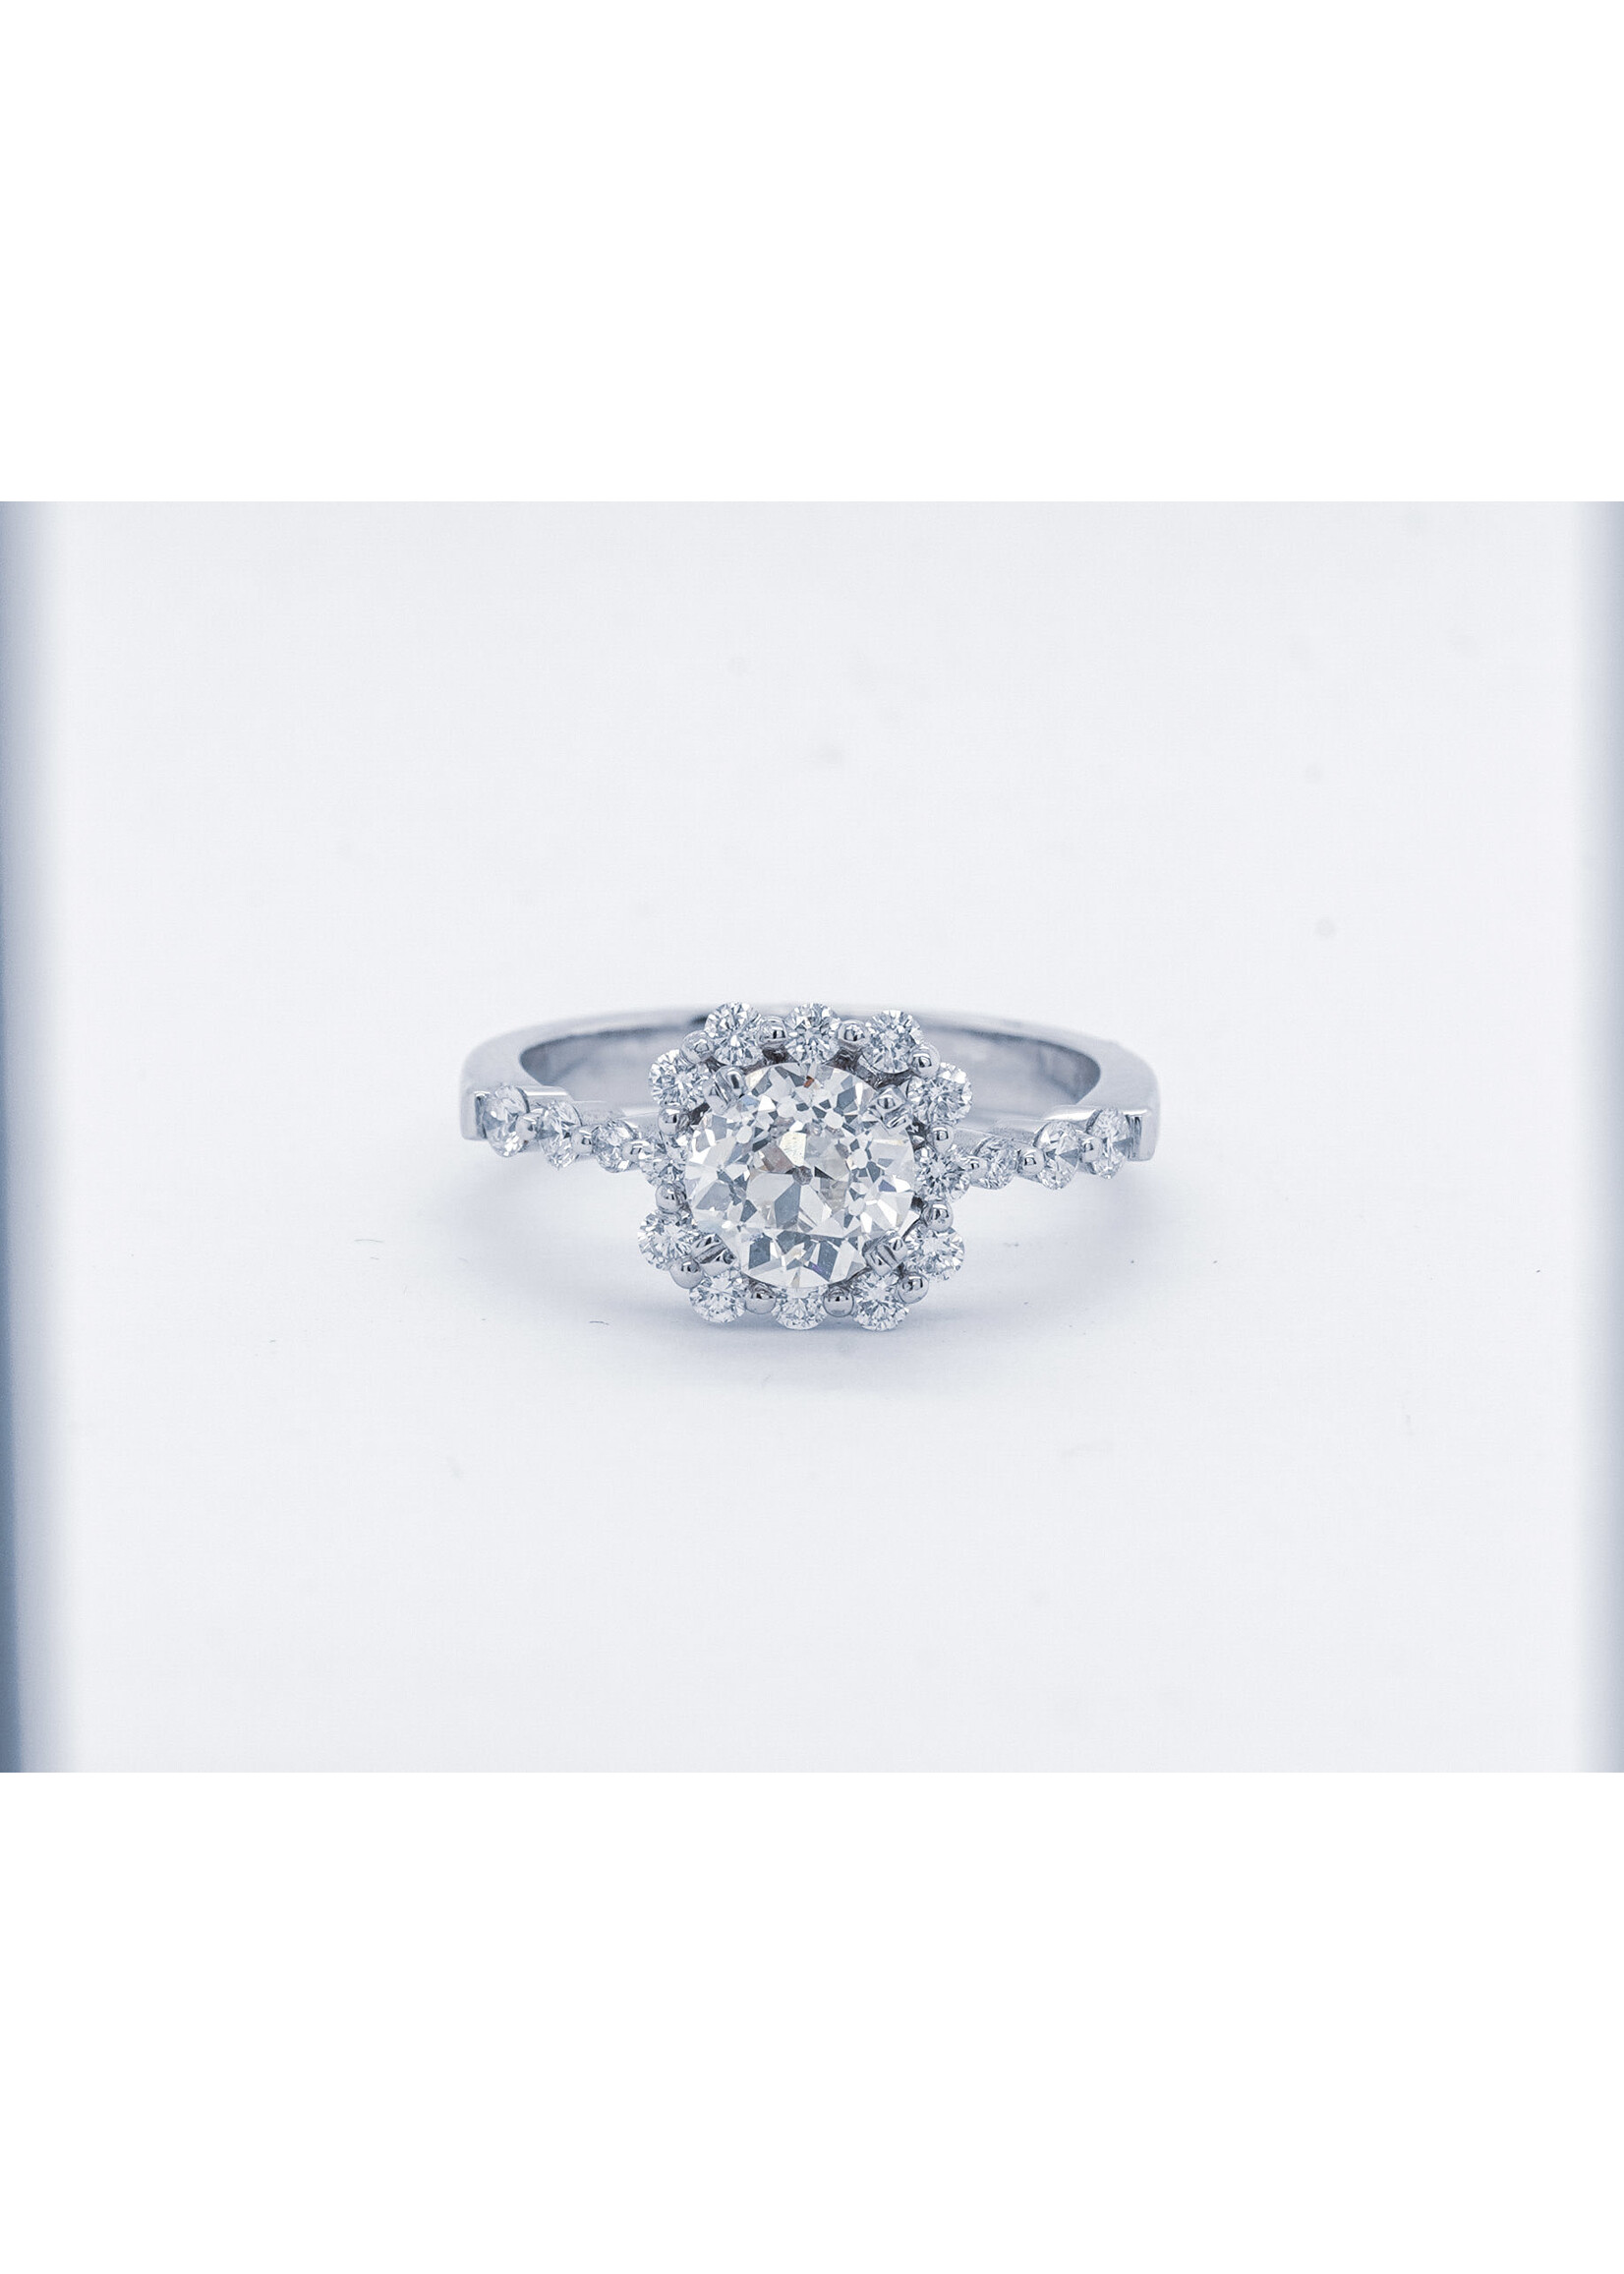 14KW 3.71g 1.69TW (1.19ctr)J/K VS2 Natalie K Diamond Engagement Ring (size 6.5)